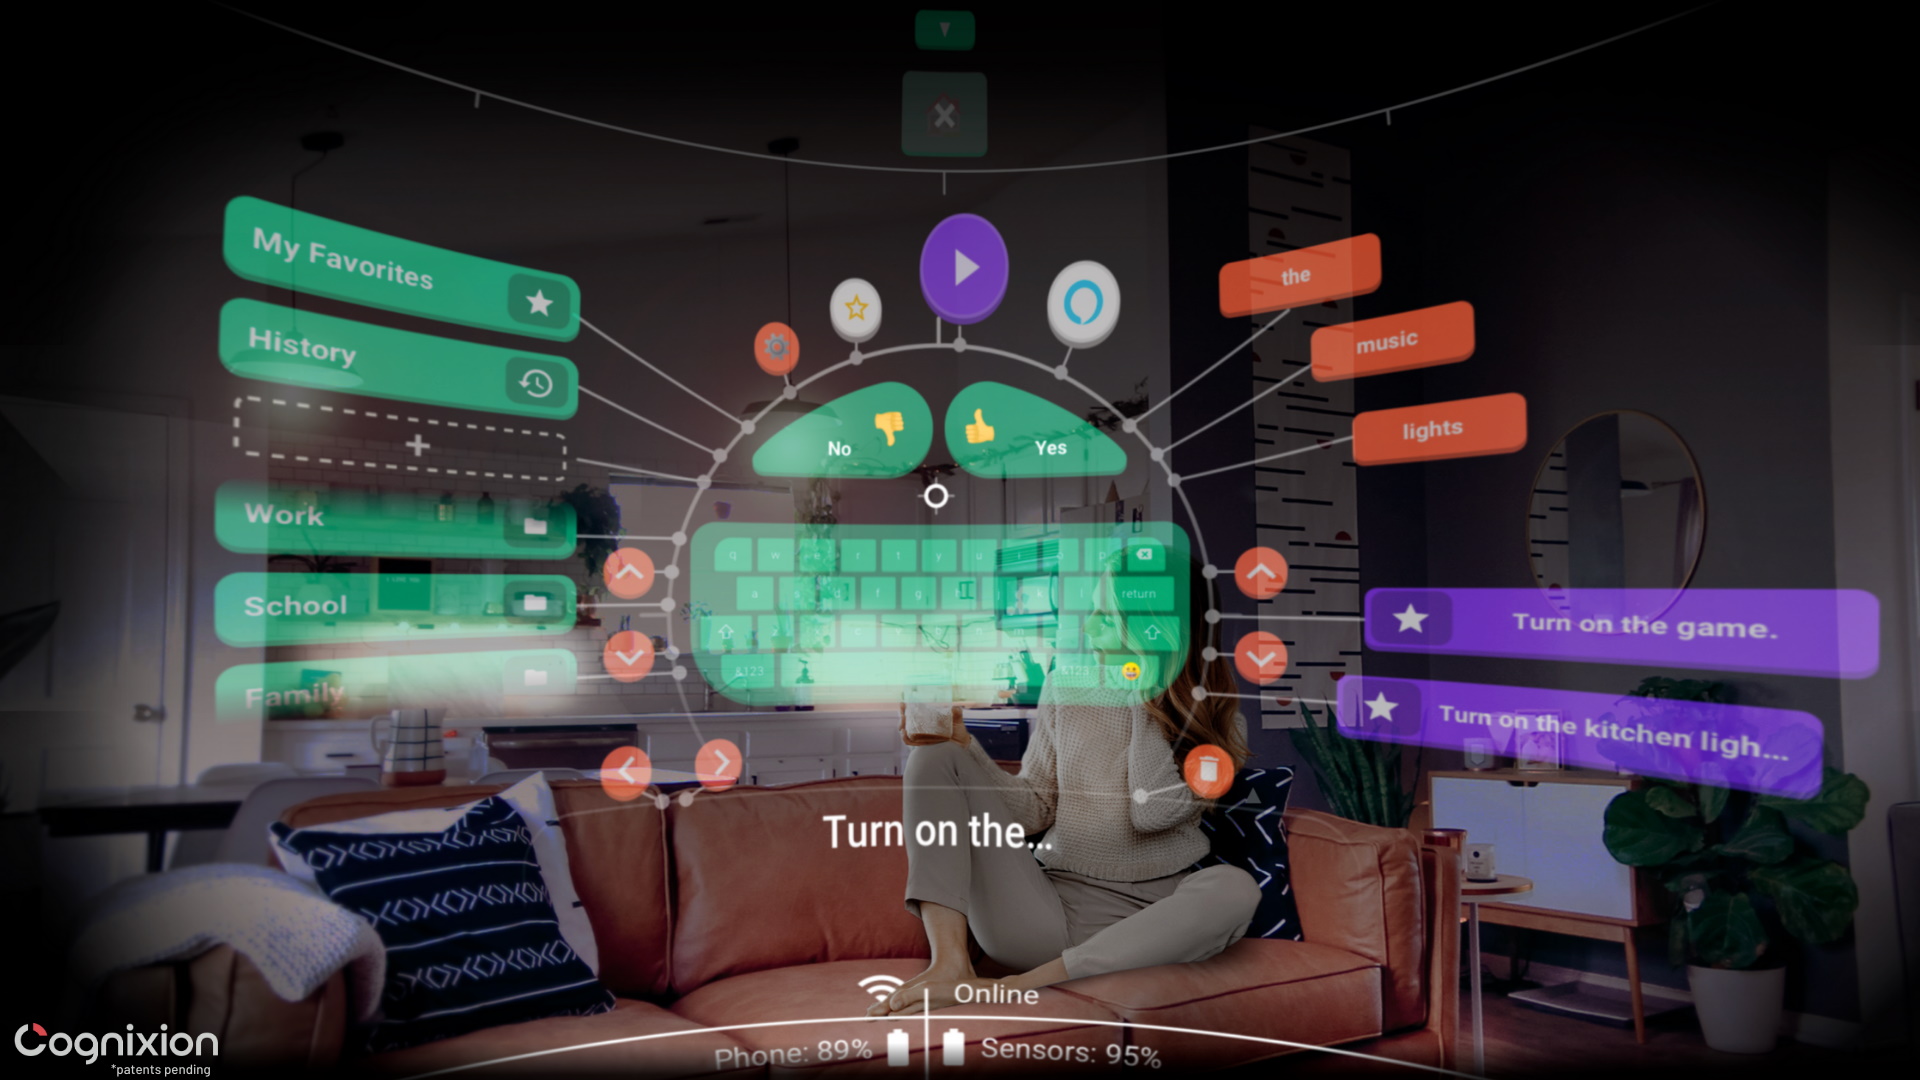 Imagen de la interfaz de Cognixion de destino tal como podría parecerle a un usuario, con botones para sí, no, frases y herramientas.